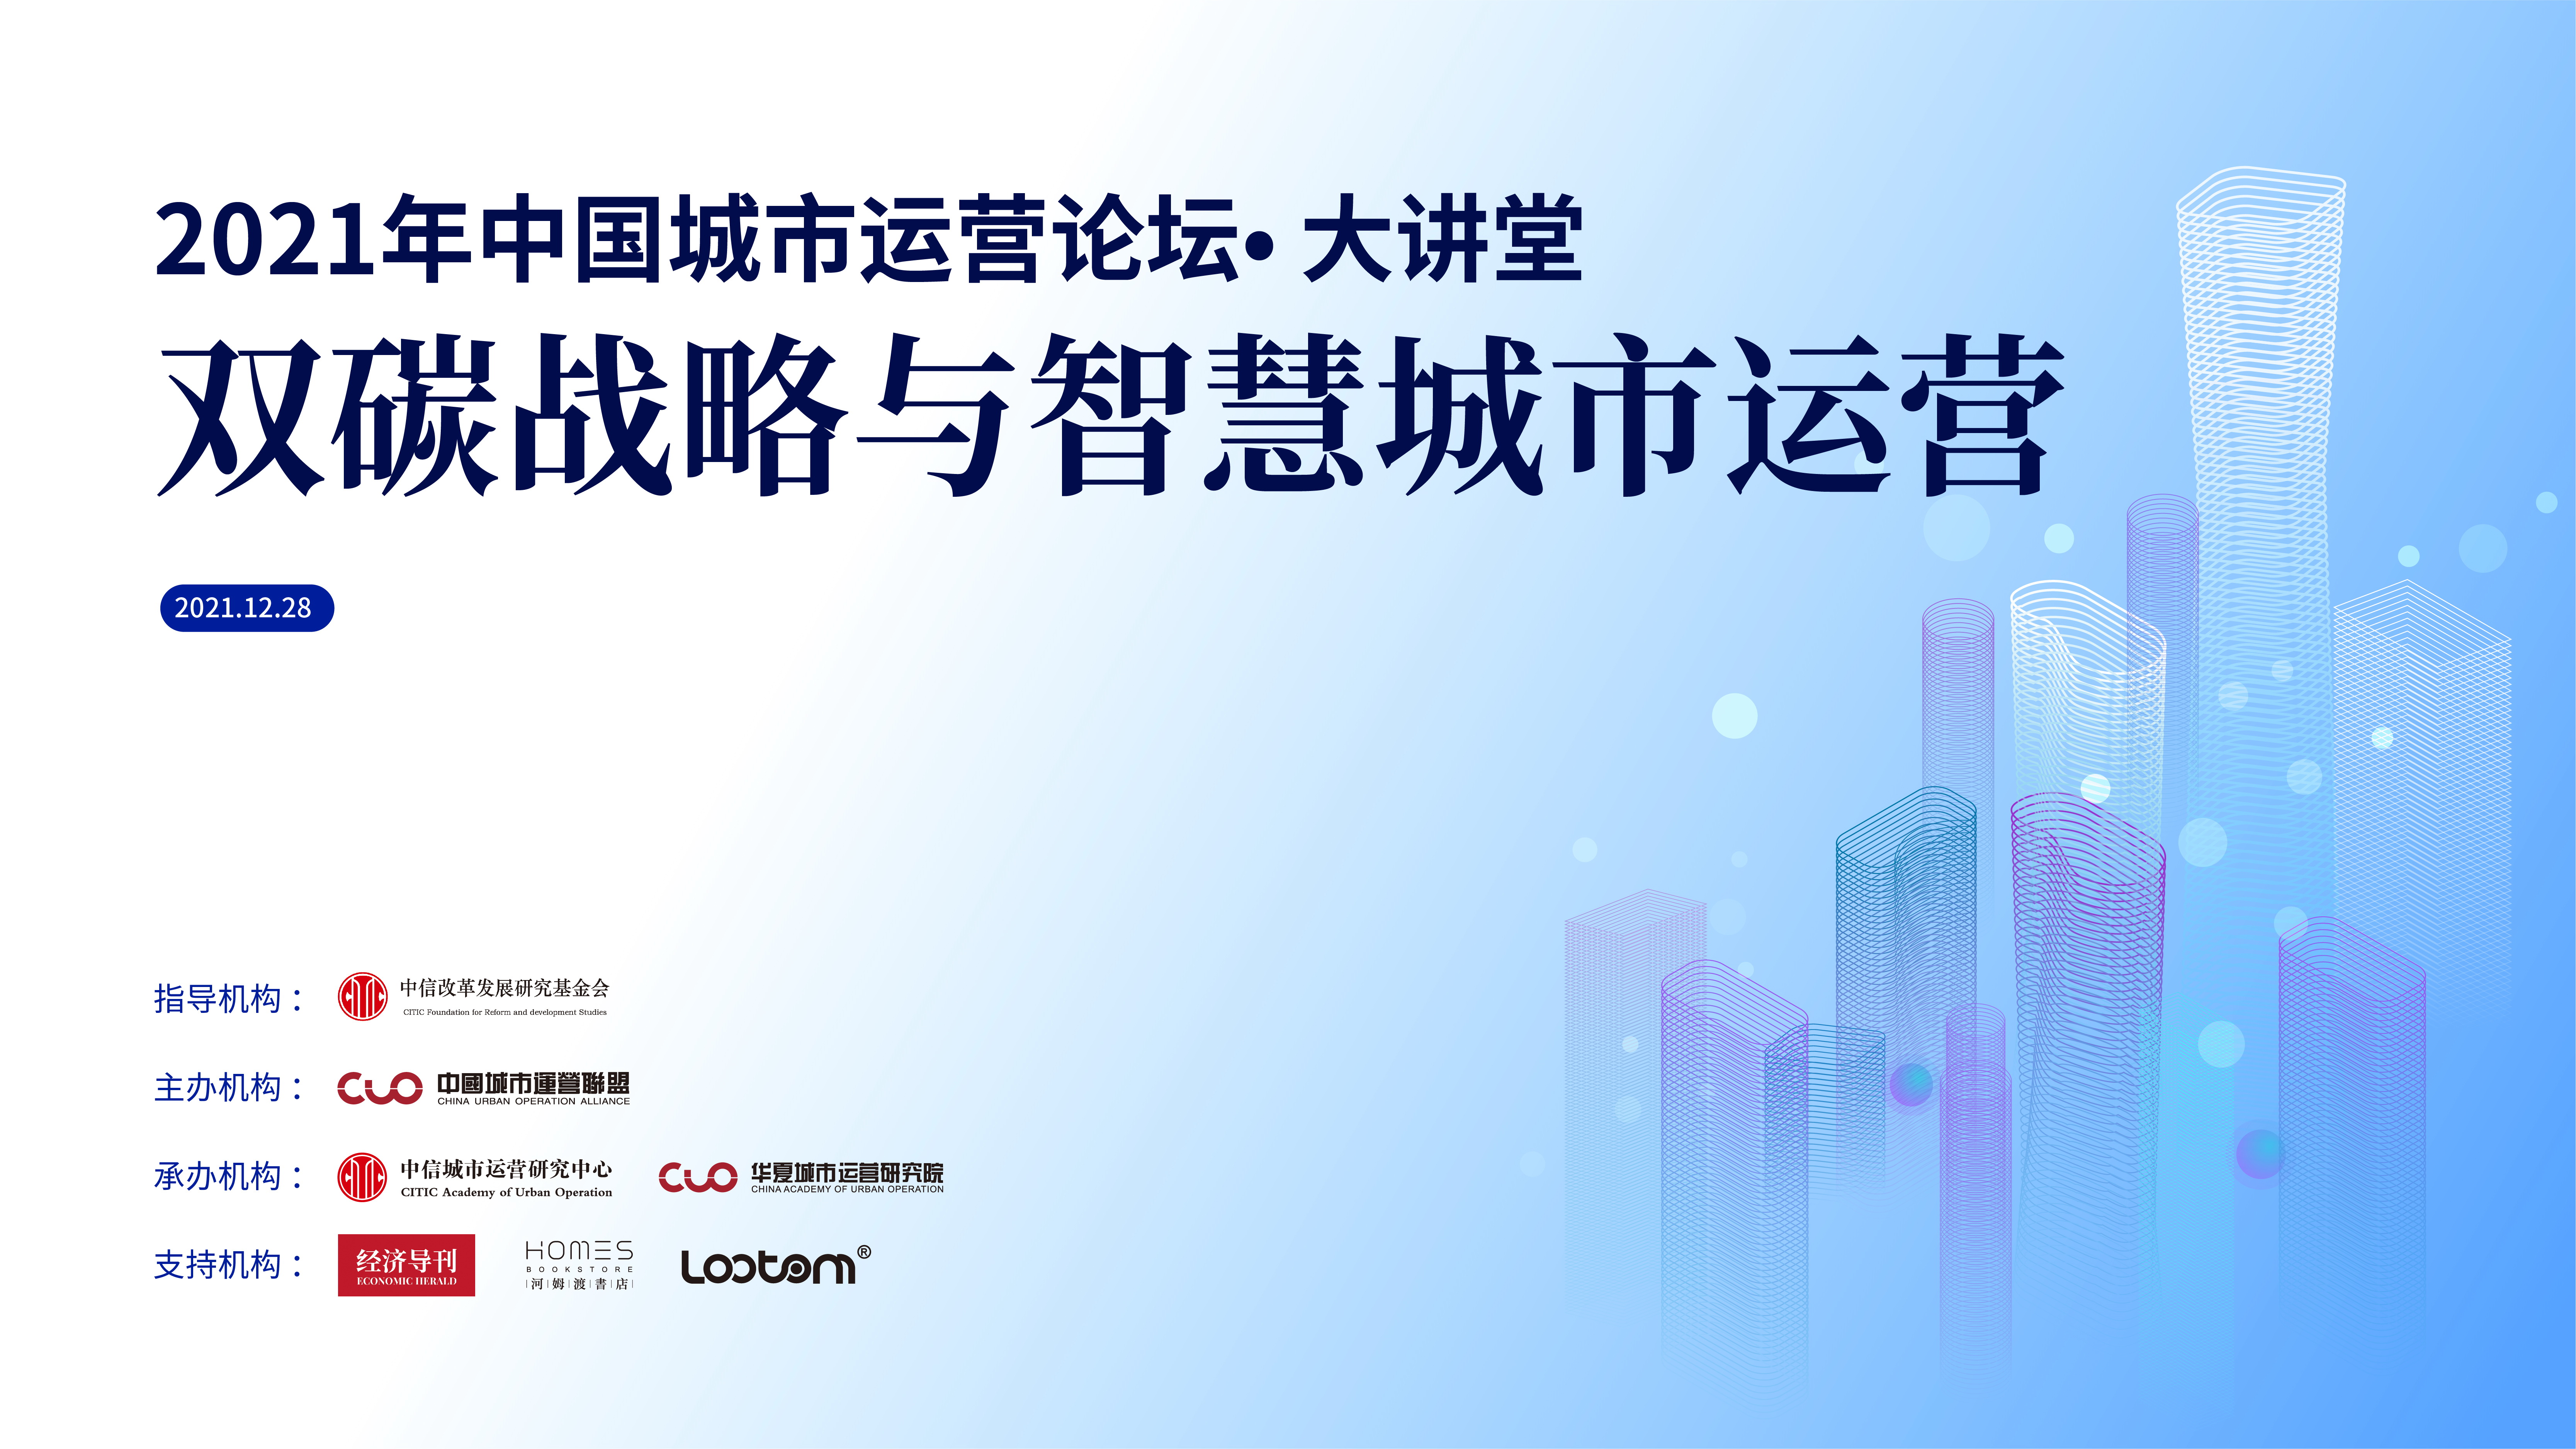 聚焦“双碳”战略与智慧城市运营——2021年中国城市运营论坛·大讲堂成功举行